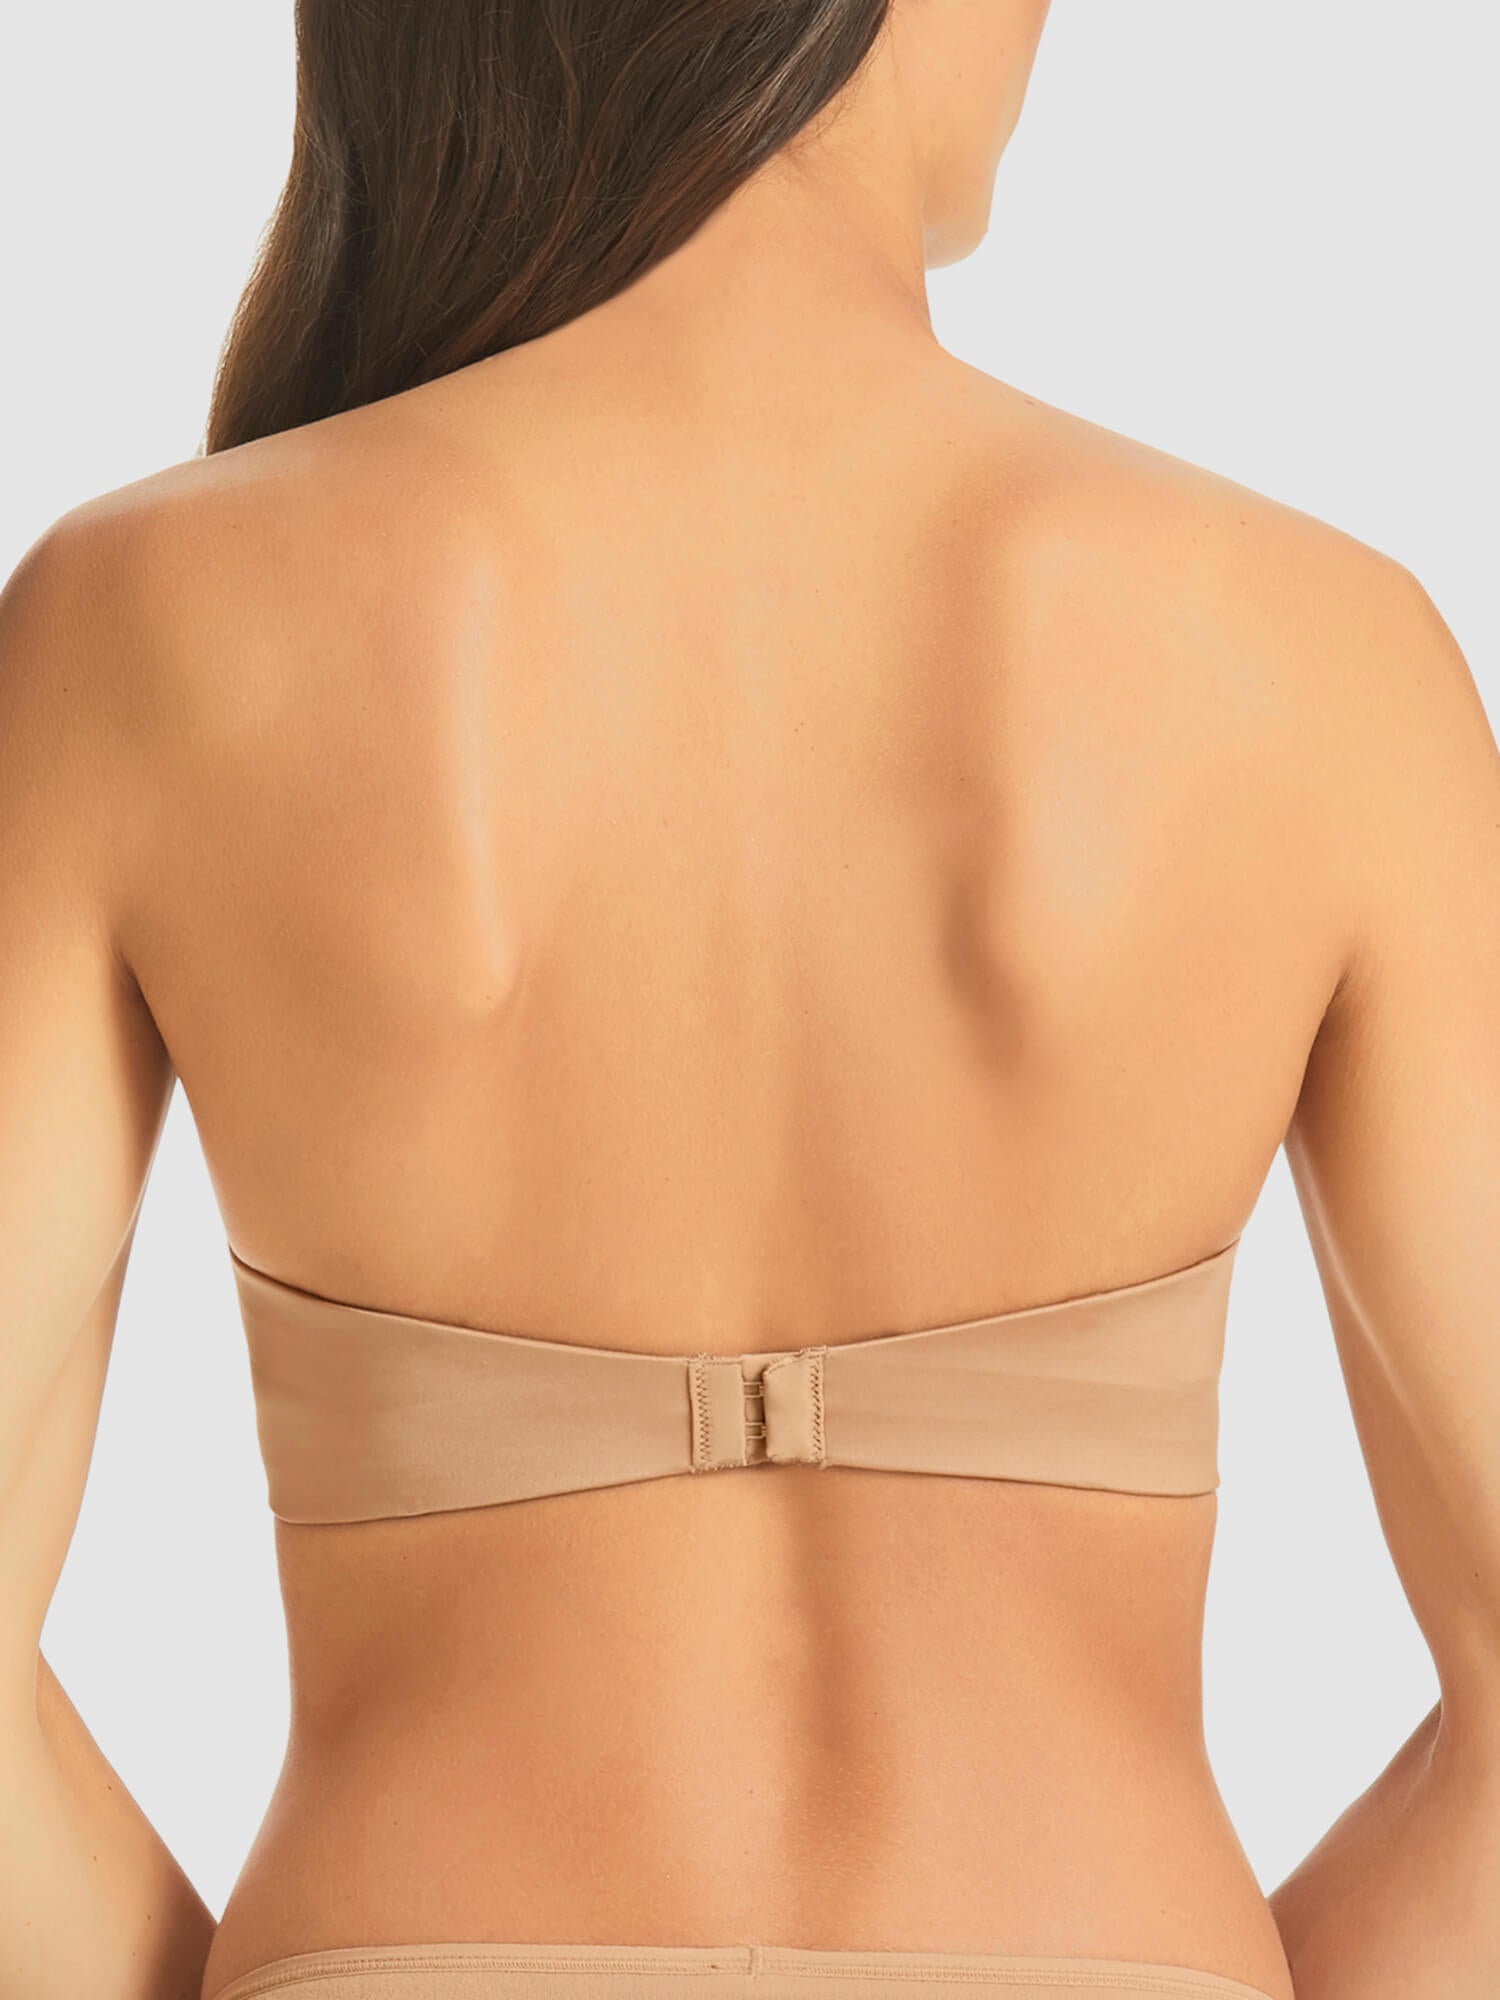 Low Cut Plunge Bras for Women Low Cut Backless Off shoulder Dress Multi-Way  Bra